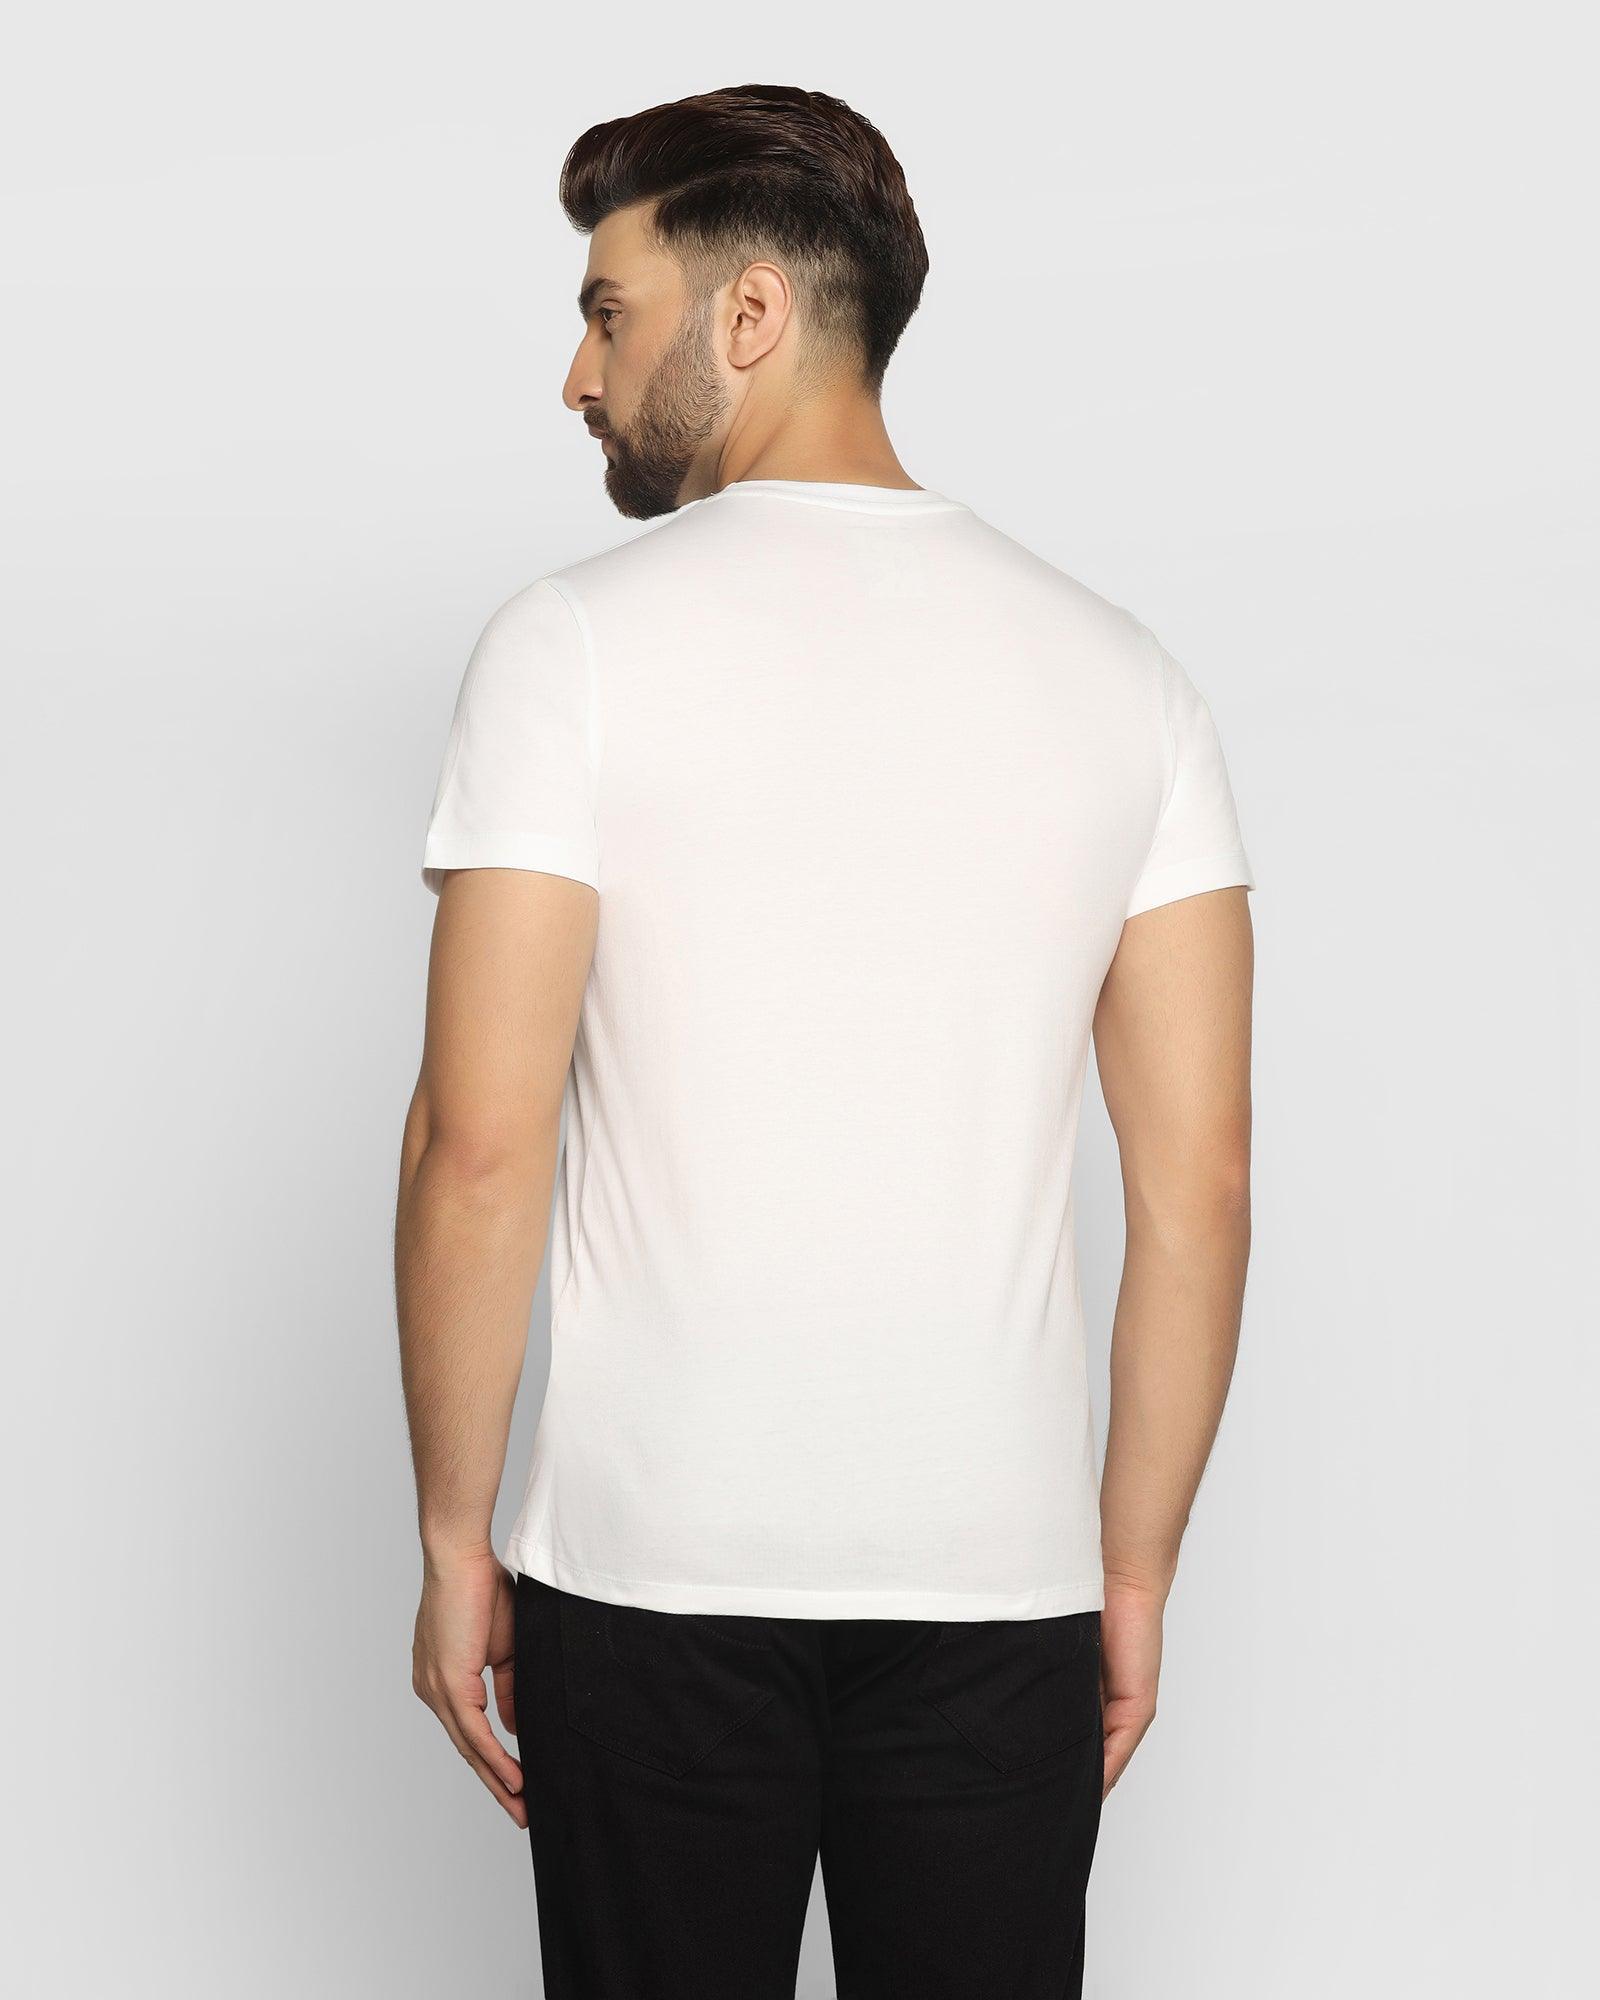 Crew Neck White Printed T Shirt - Mesh